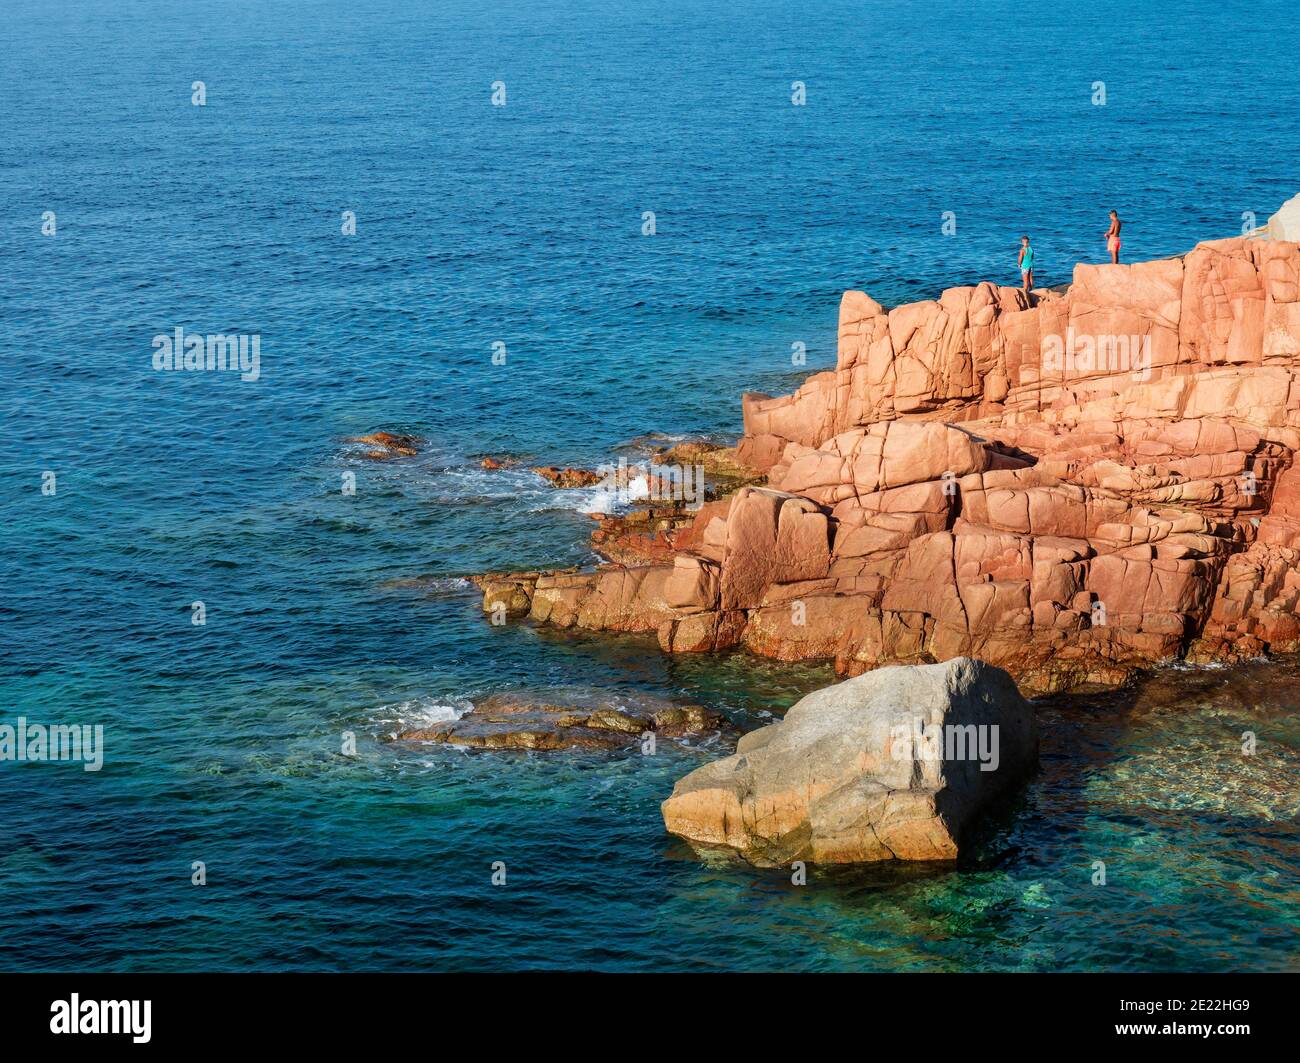 Red Rocks appelé Rocce Rosse au bord de la mer méditerranée à Arbatax avec deux garçons pêchant. Tortoli, Ogliastra, Sardaigne, Italie. Jour ensoleillé d'été Banque D'Images